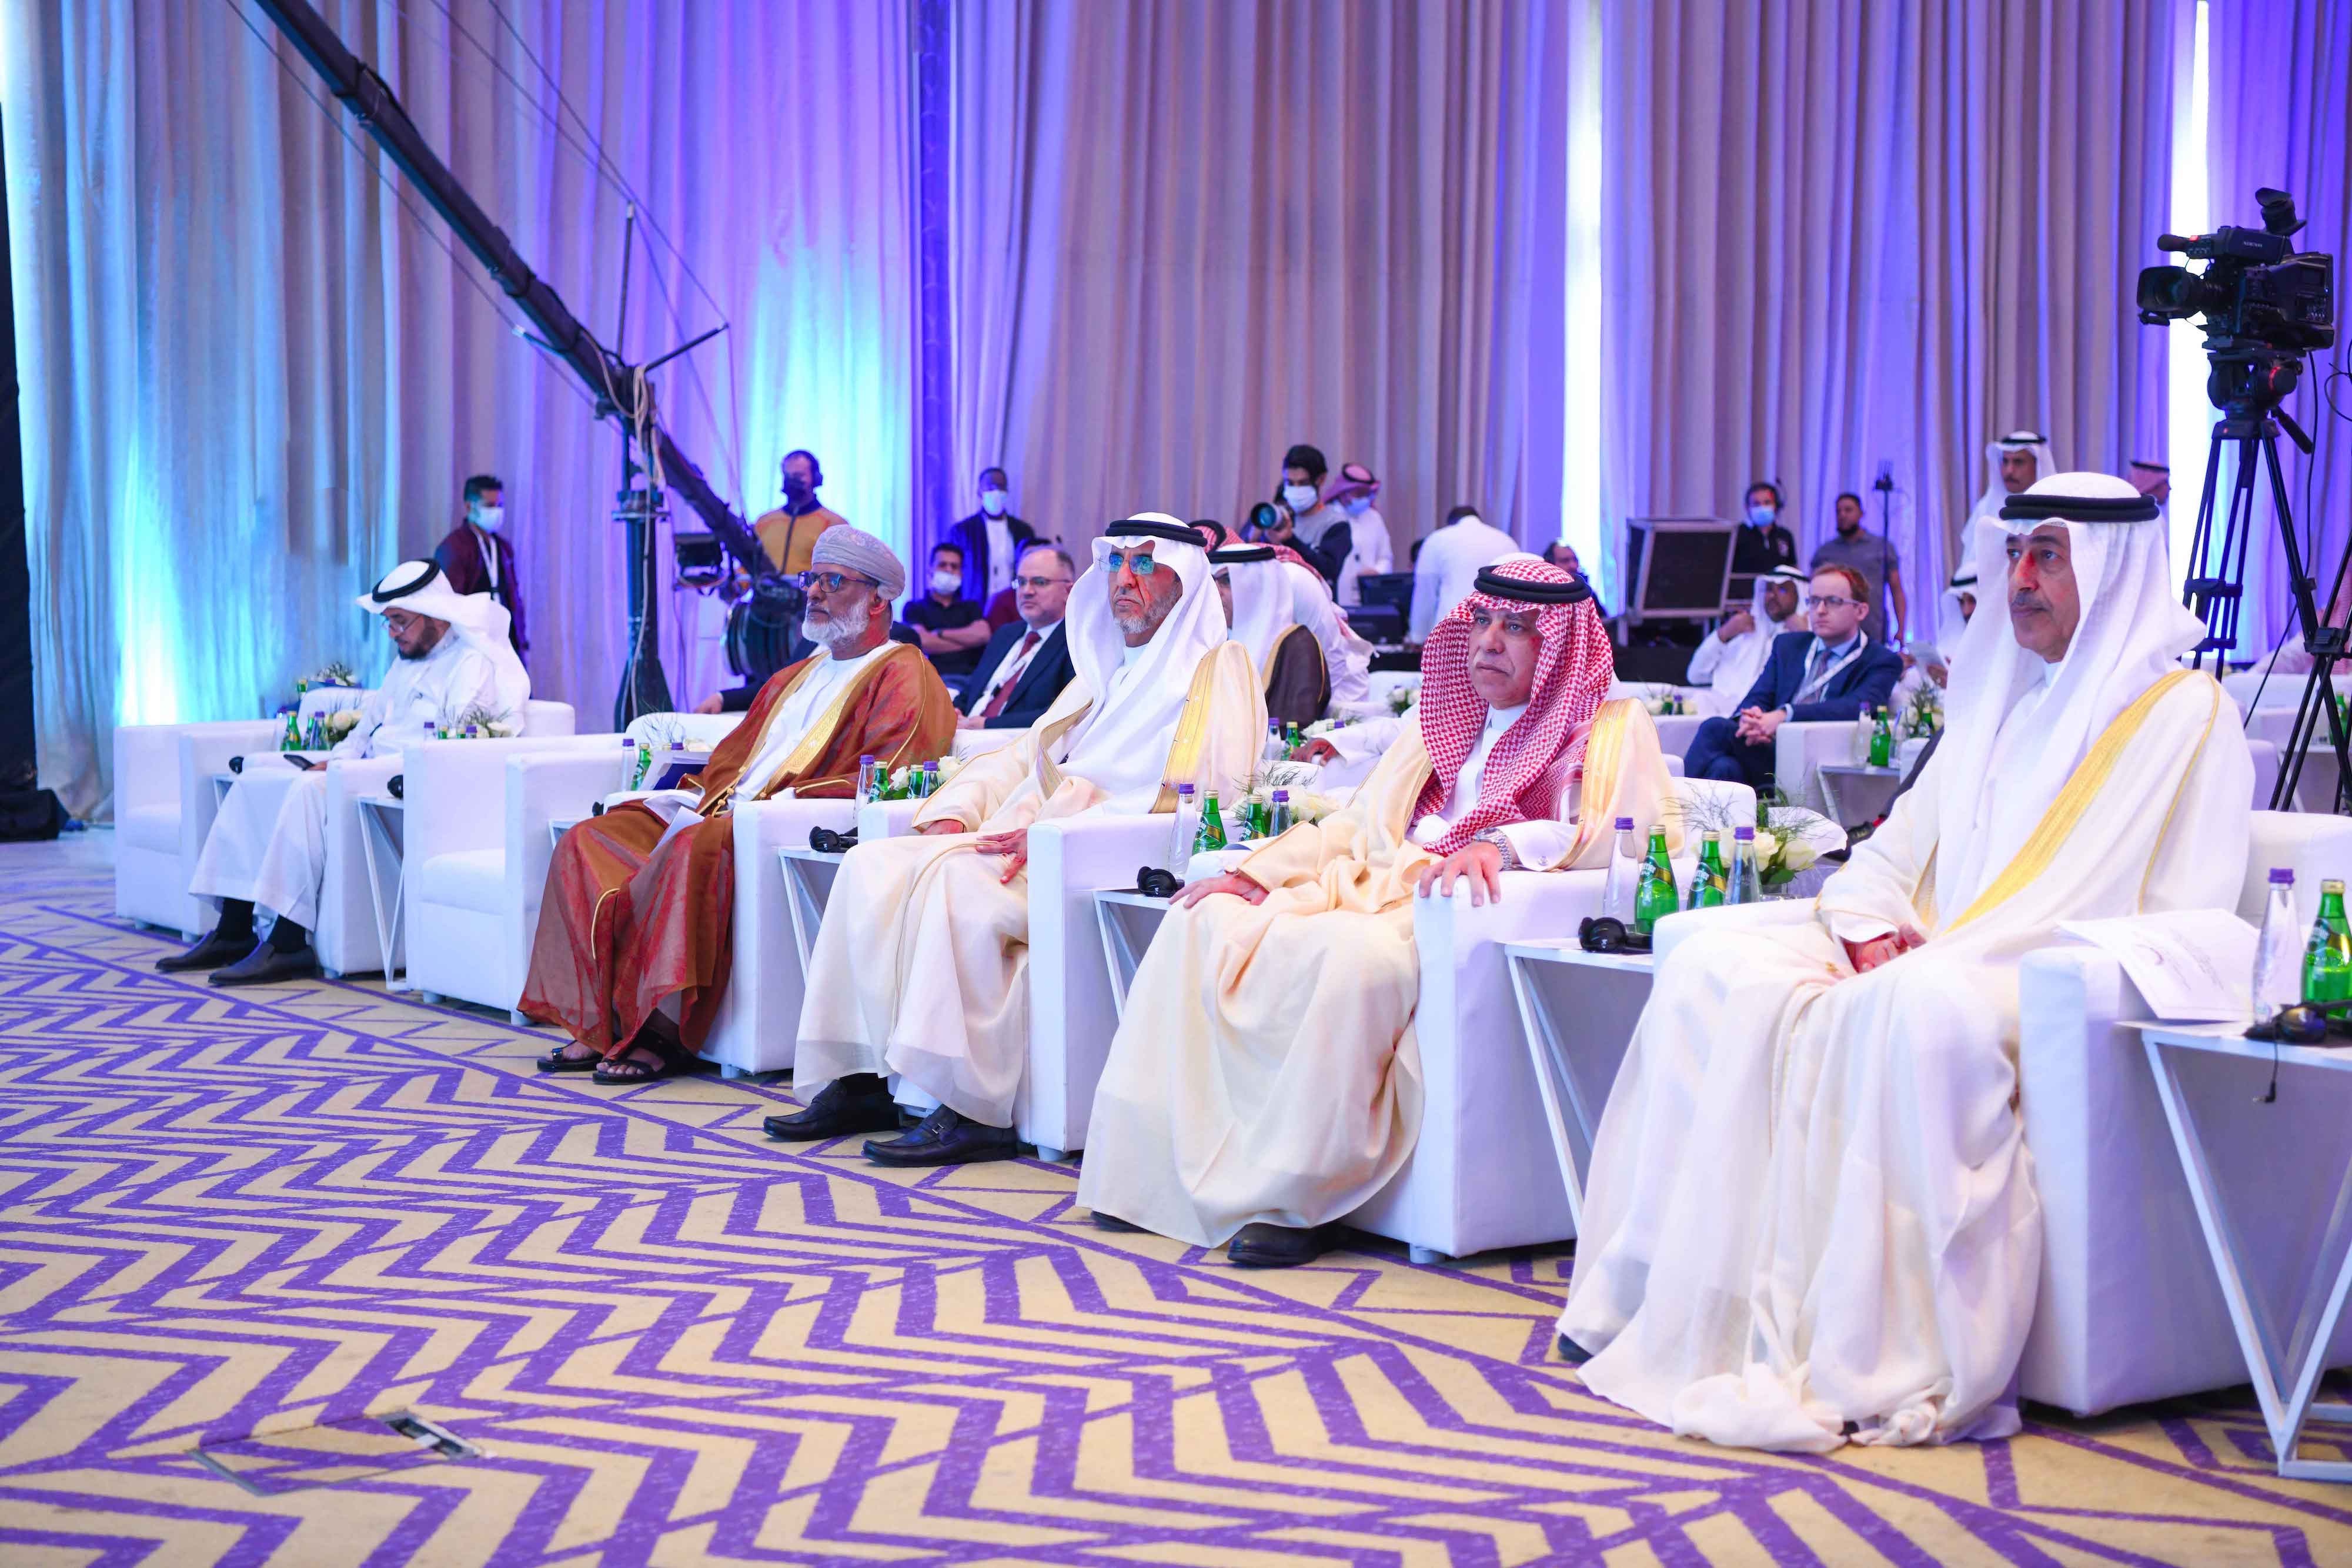 السعودية تترأس أعمال اجتماعات الدورة السابعة والخمسين للجنة العربية العليا للتقييس